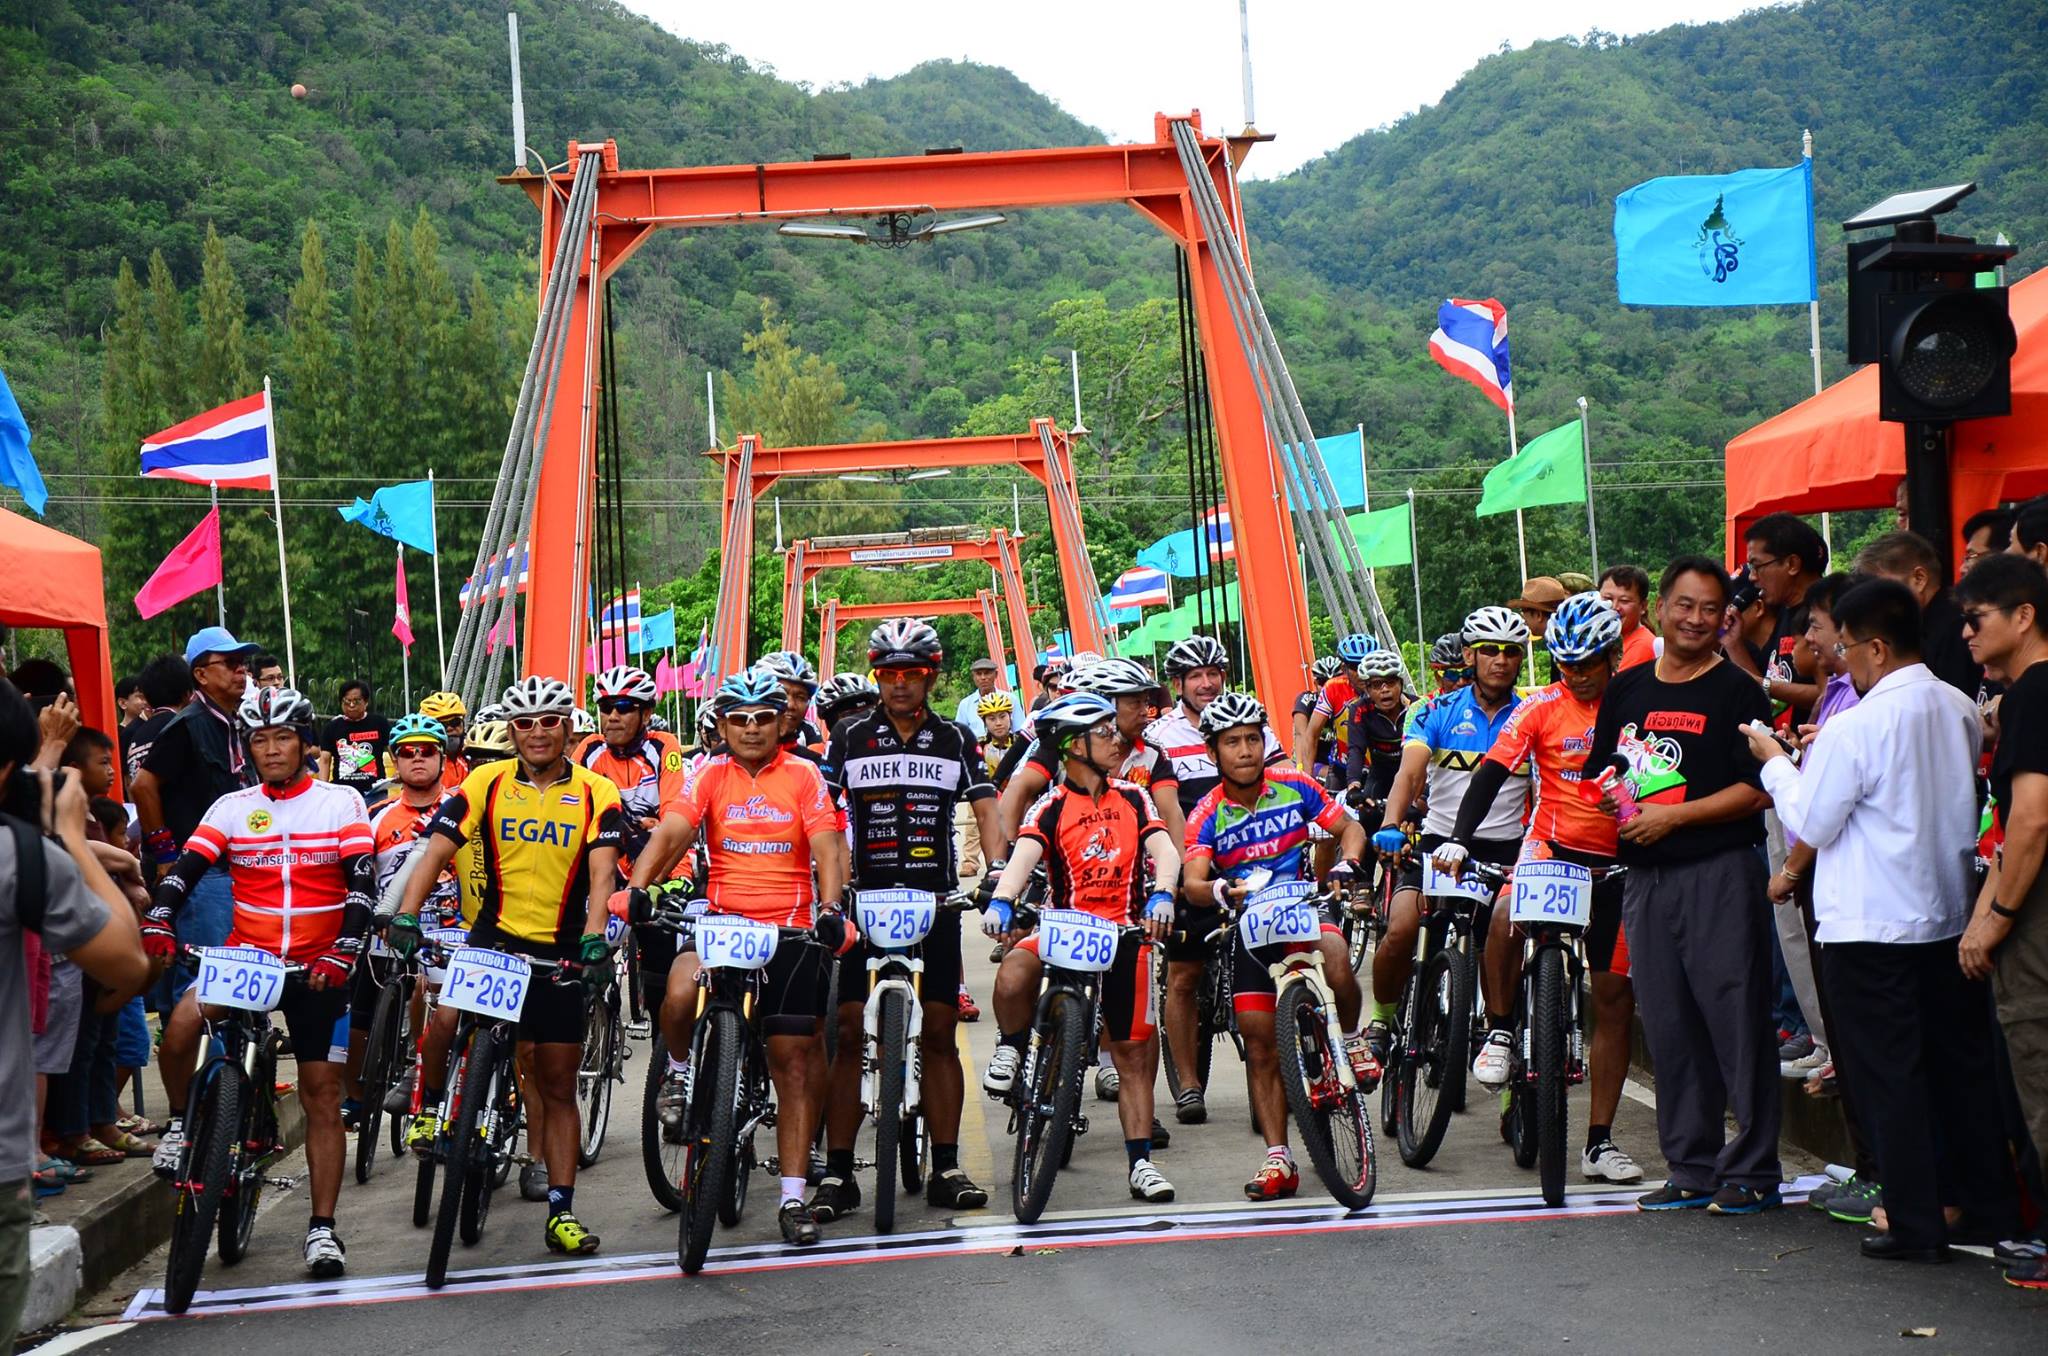 รูปภาพของ การแข่งขันจักรยาน เขื่อนภูมิพลเสือภูเขานานาชาติครั้งที่ 15 ประจำปี 2559